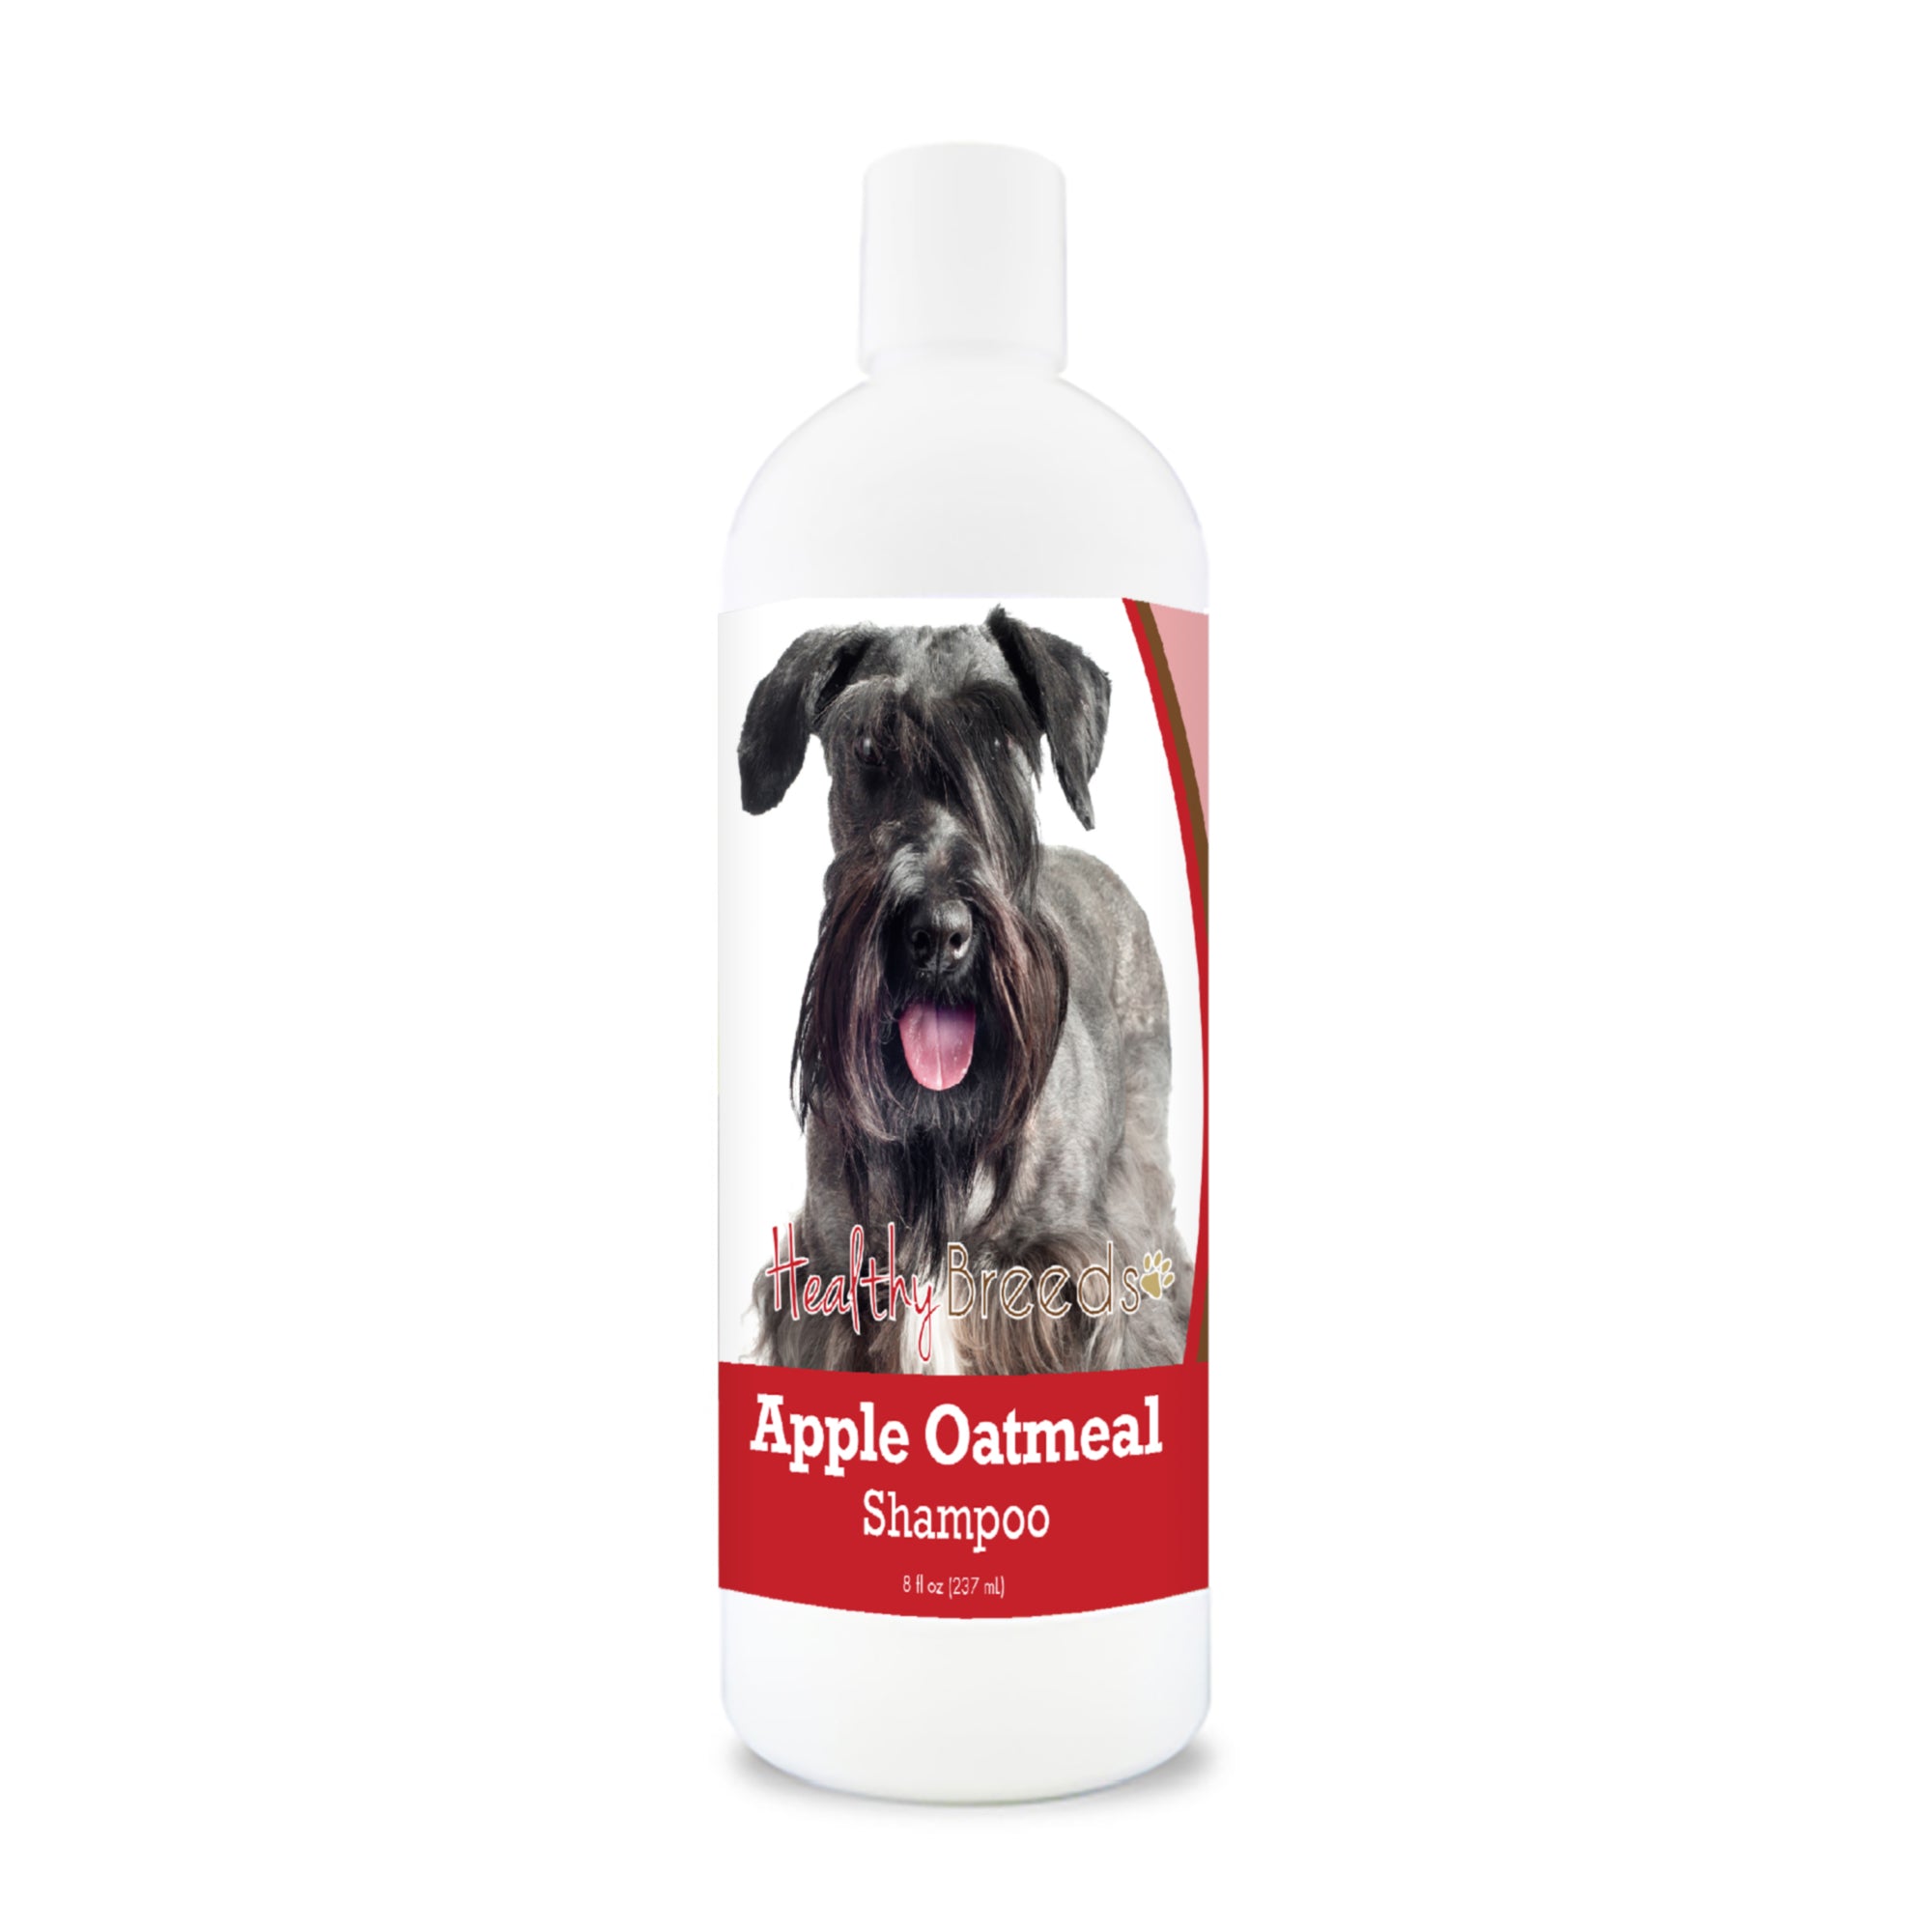 Cesky Terrier Apple Oatmeal Shampoo 8 oz